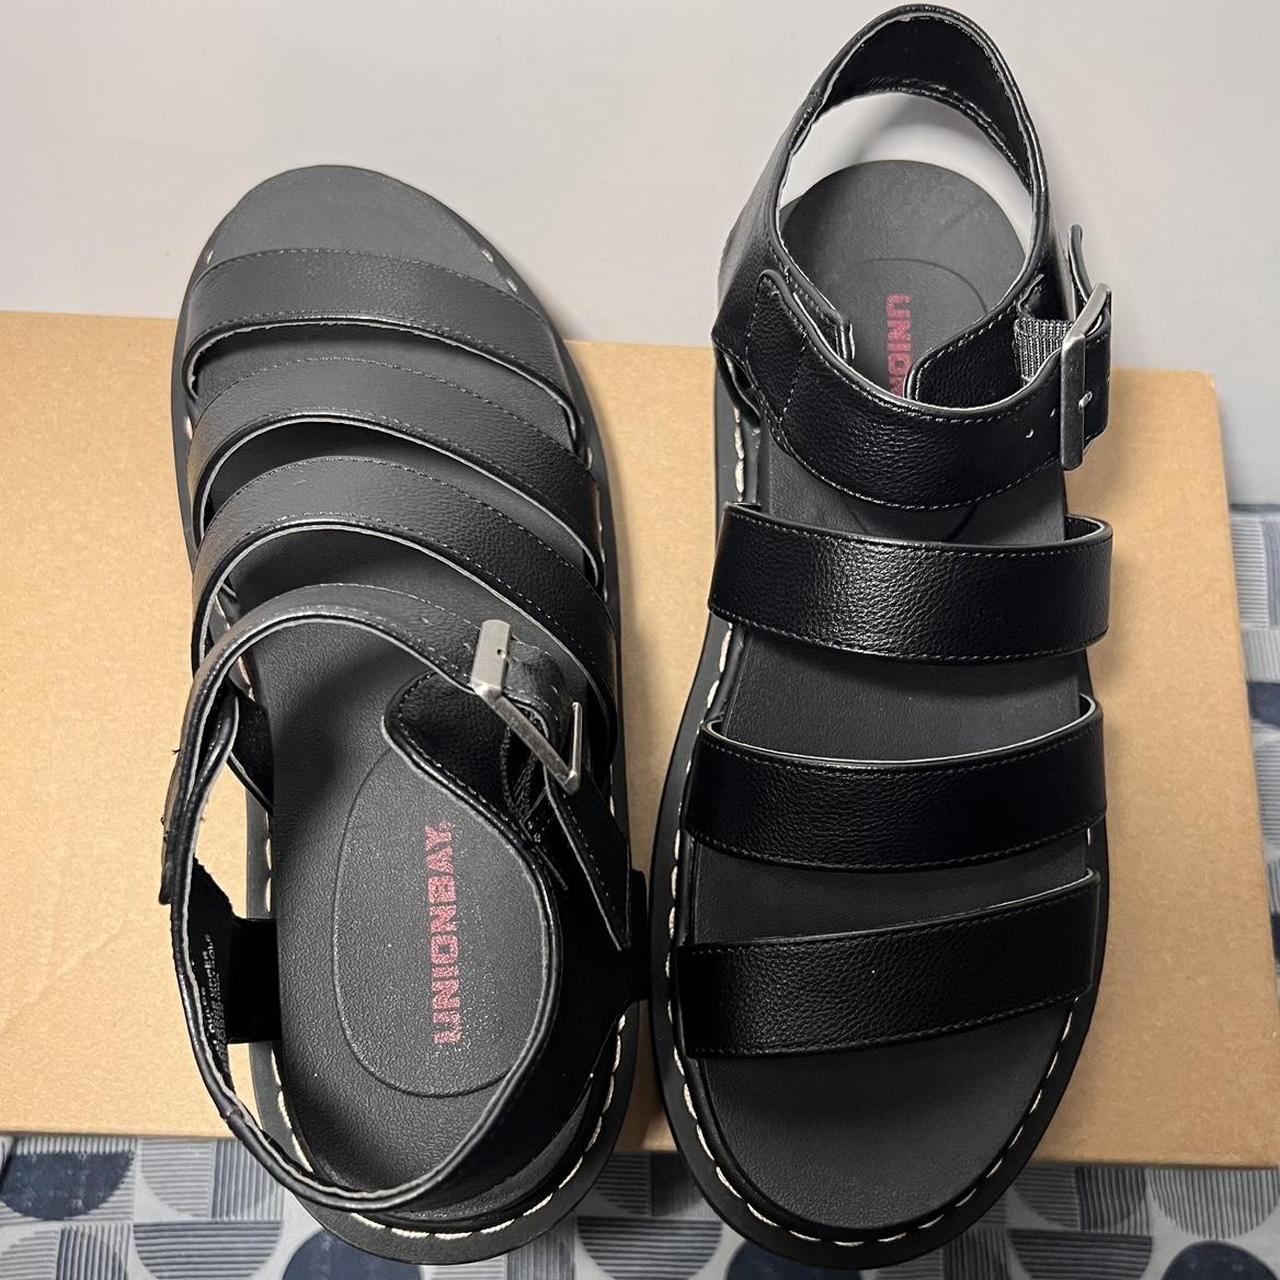 Union Bay Women's Black Sandals (4)